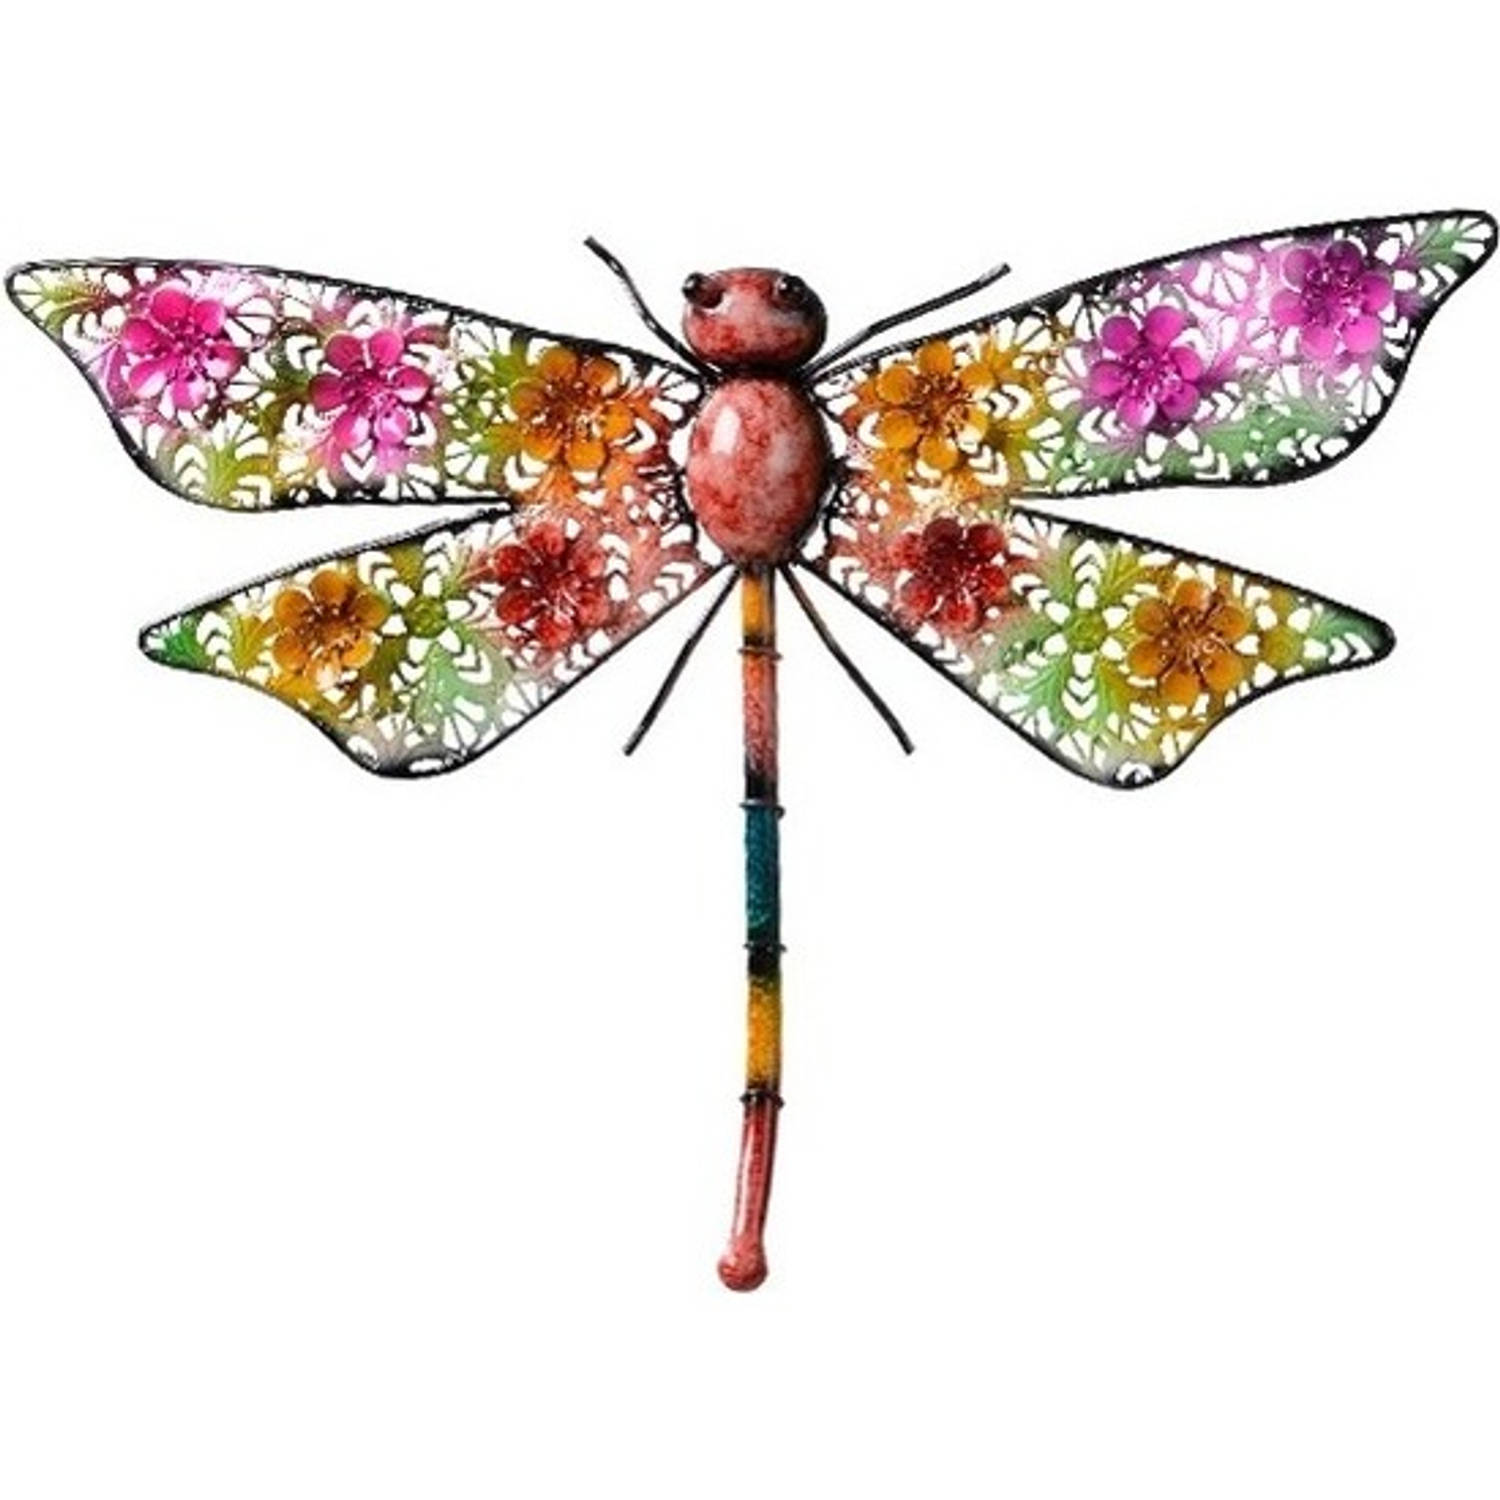 Gekleurde metalen tuindecoratie libelle hangdecoratie 29 x 47 cm cm - Tuinbeelden